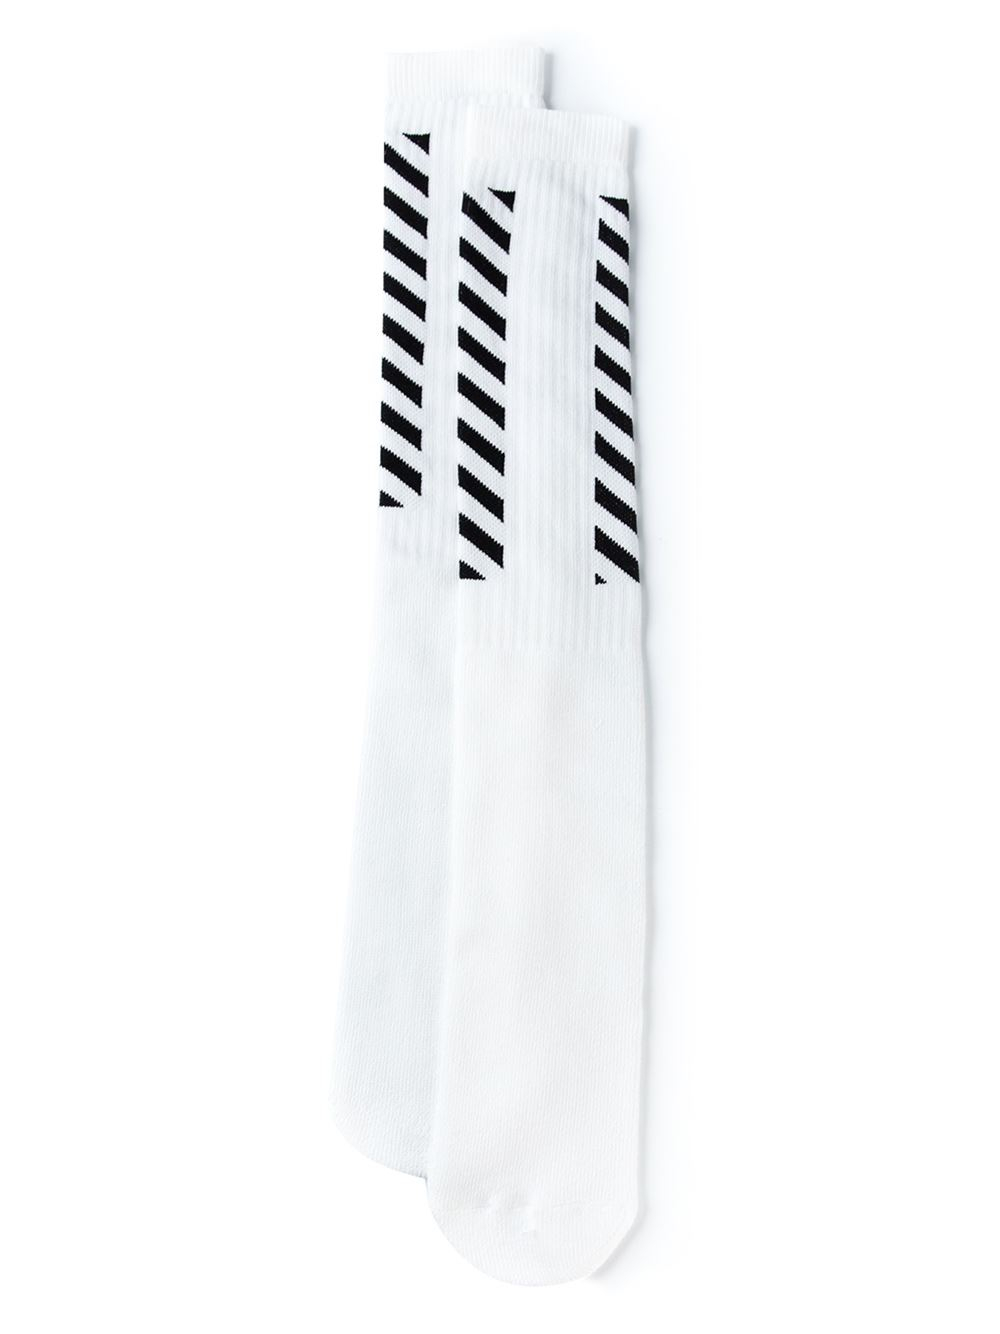 Ægte video Forøge Off-White c/o Virgil Abloh Diagonal Striped Socks in Black for Men - Lyst